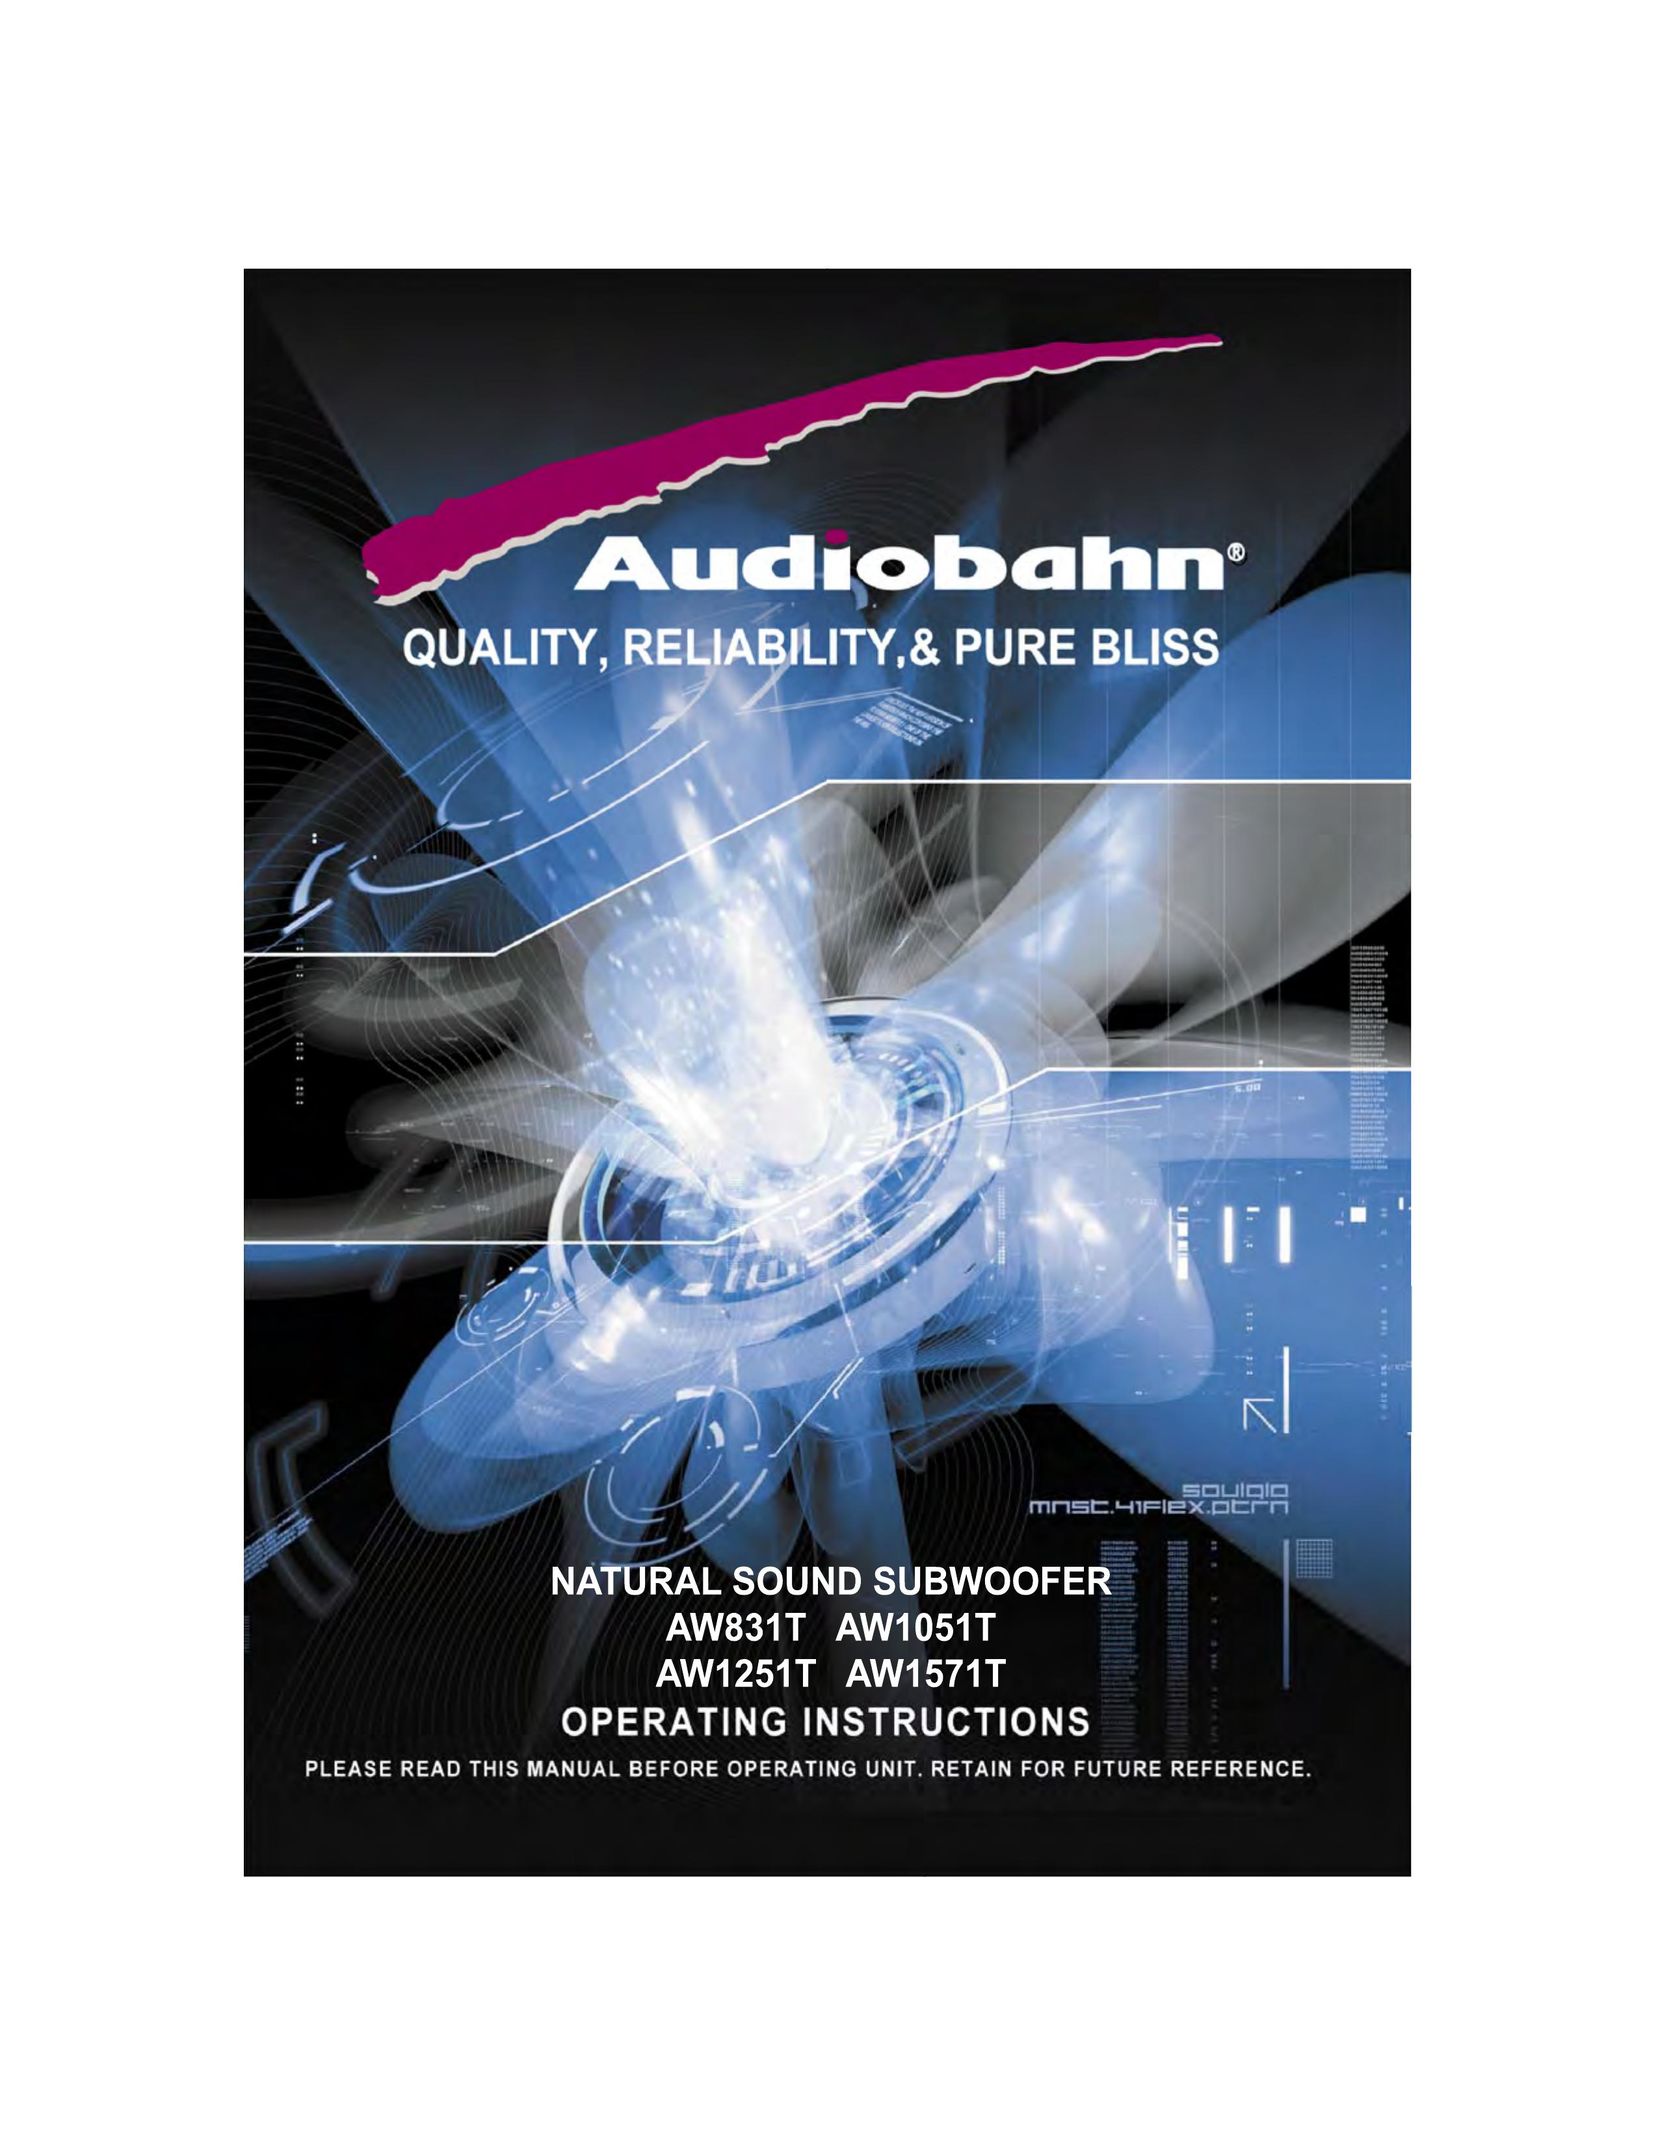 AudioBahn AW1571T Car Speaker User Manual